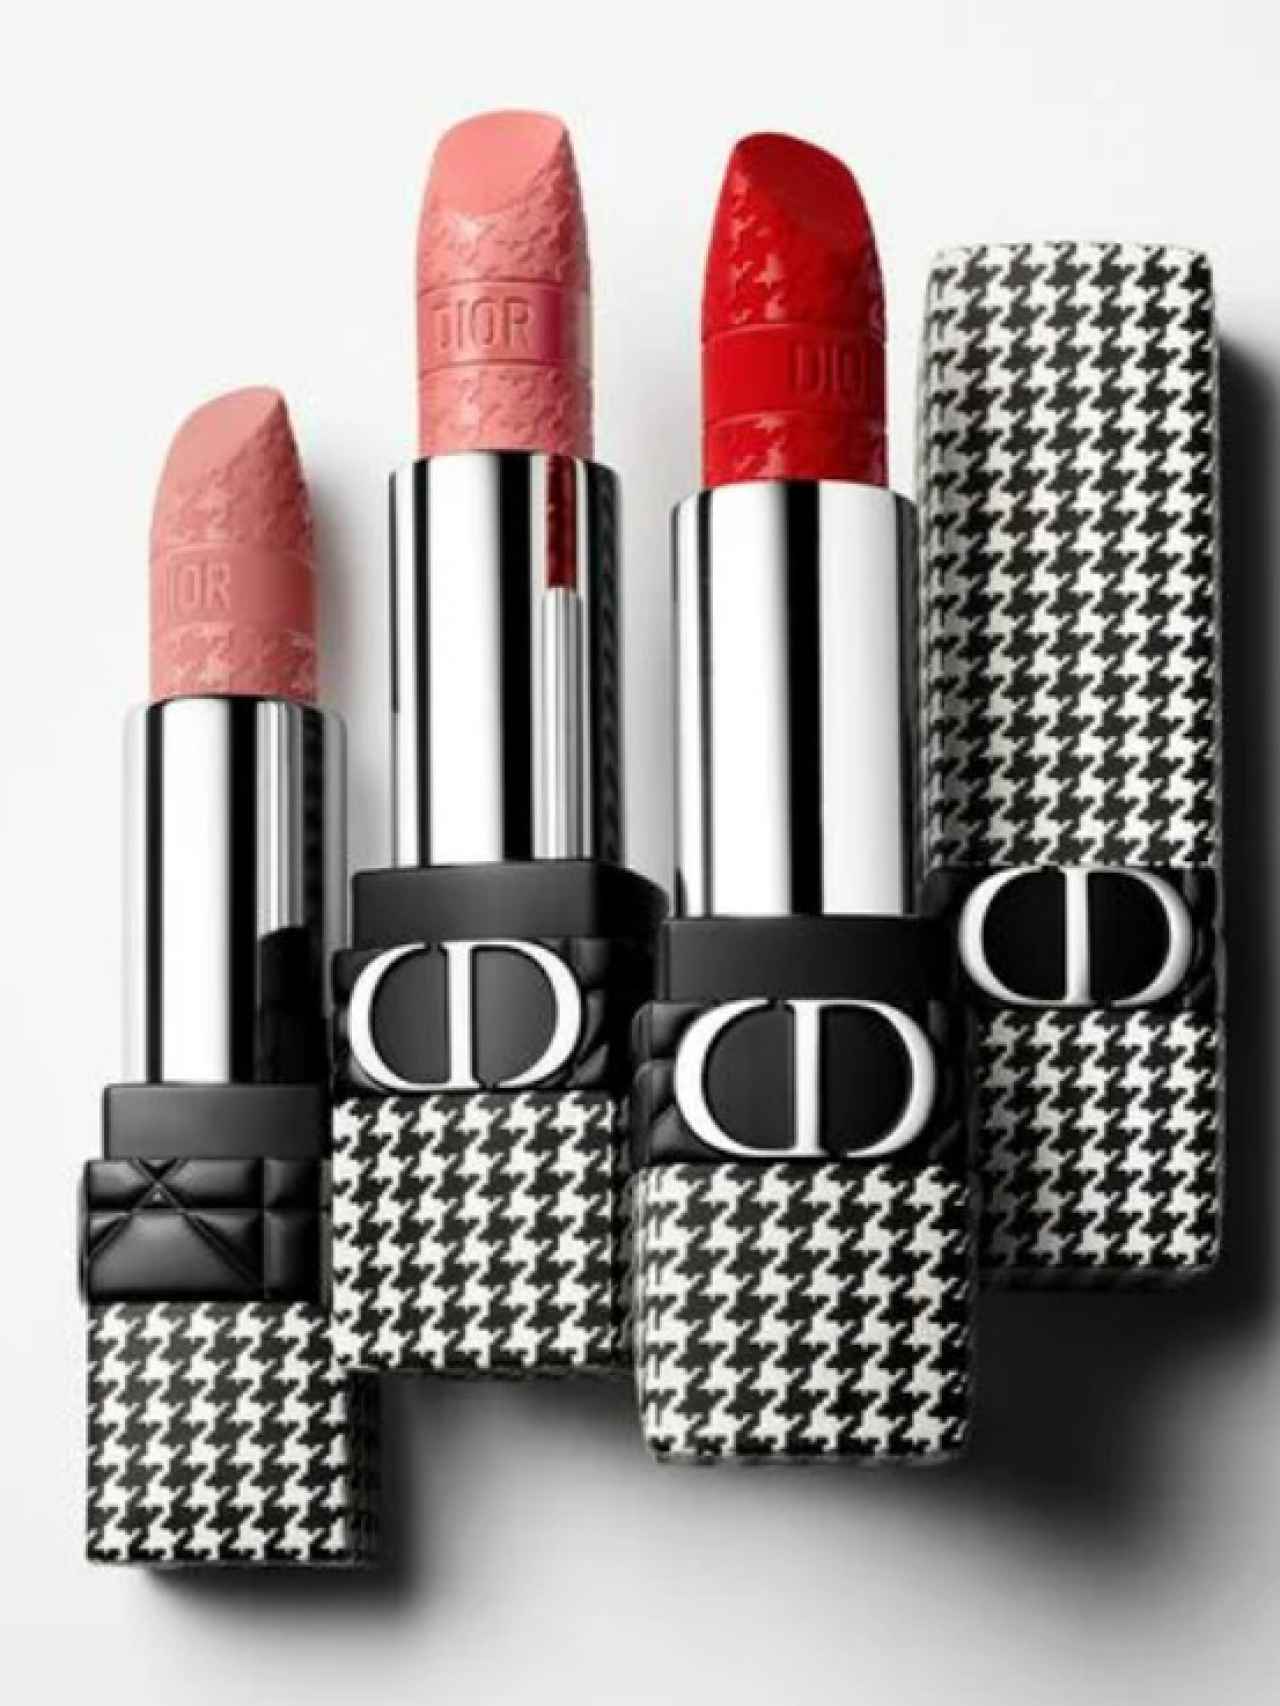 La nueva versión de la Rouge Dior destaca por su espectacular empaque.